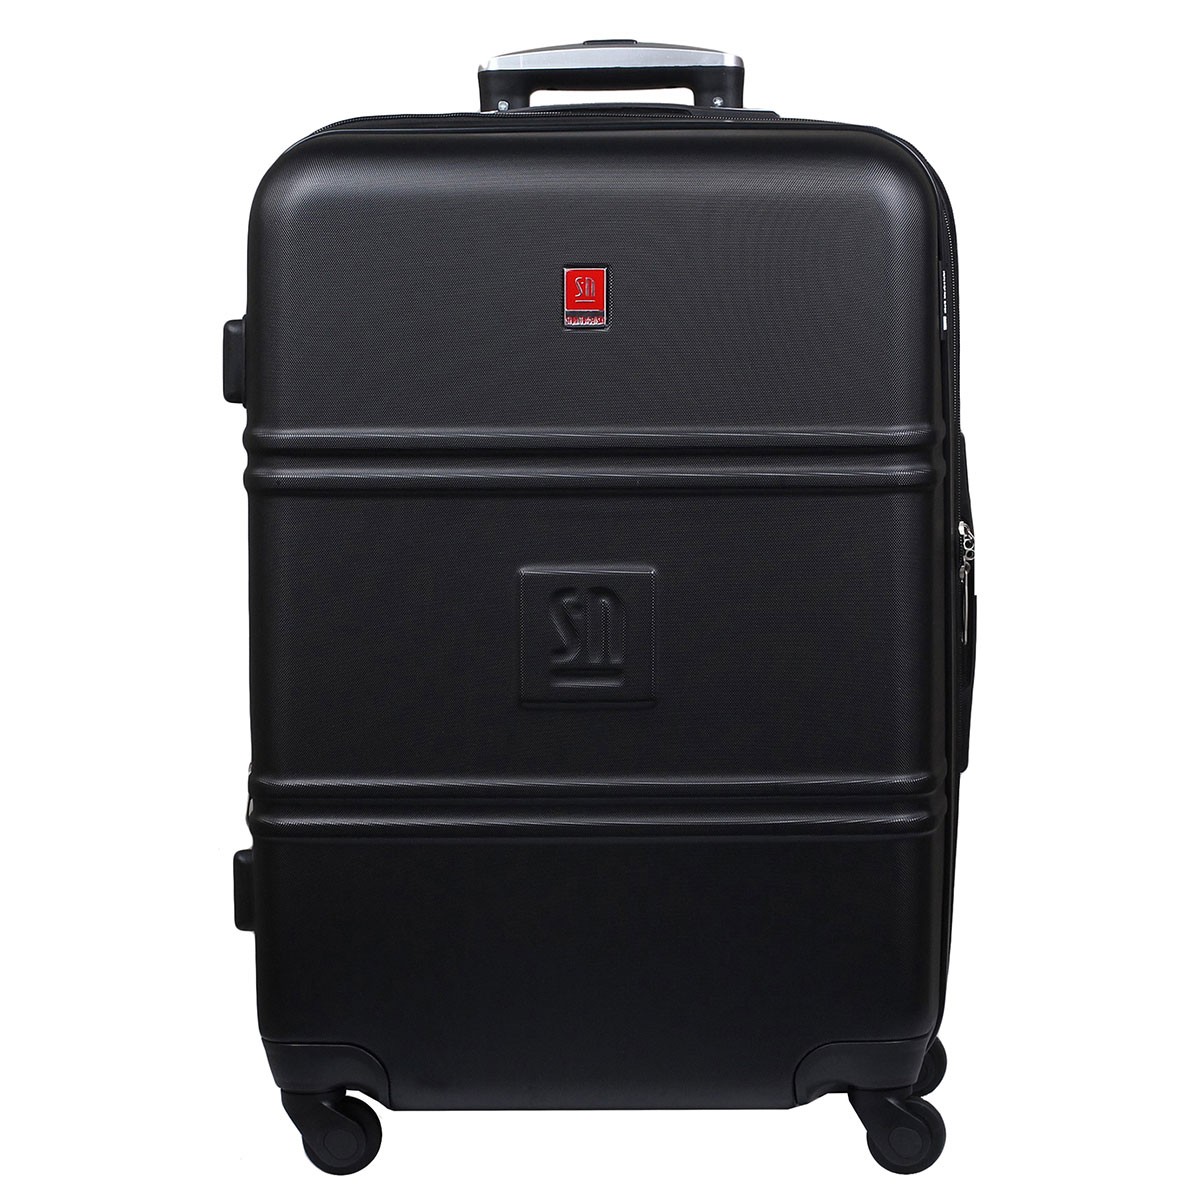 czarna-walizka-duza-ABS-04-0411S-01.jpg